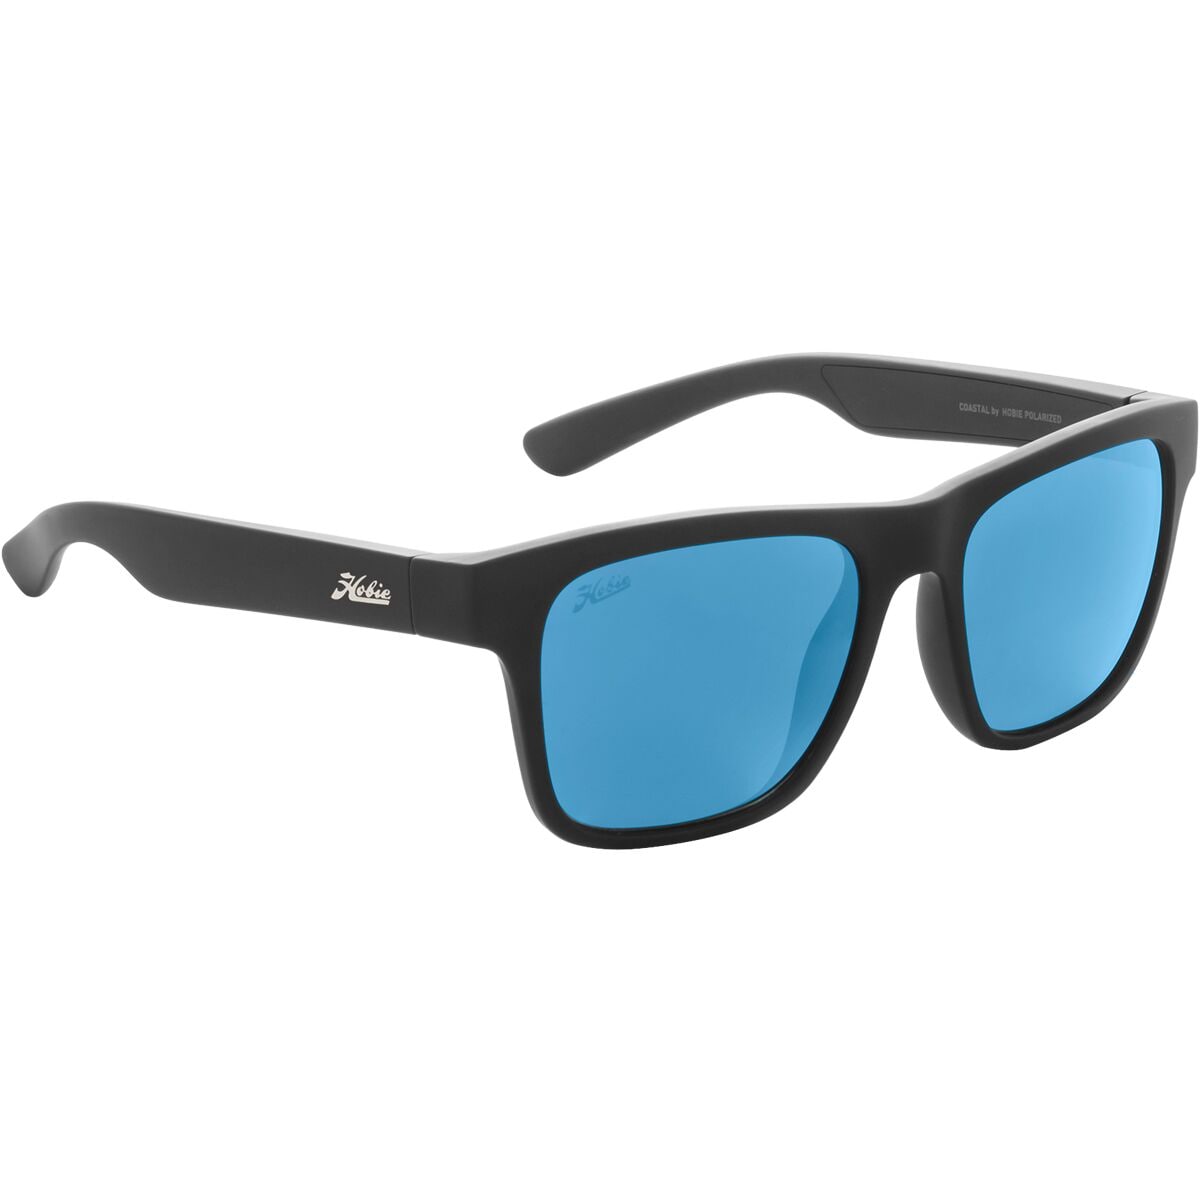 Hobie Coastal Float Polarized Sunglasses Satin Black/Grey, One Size